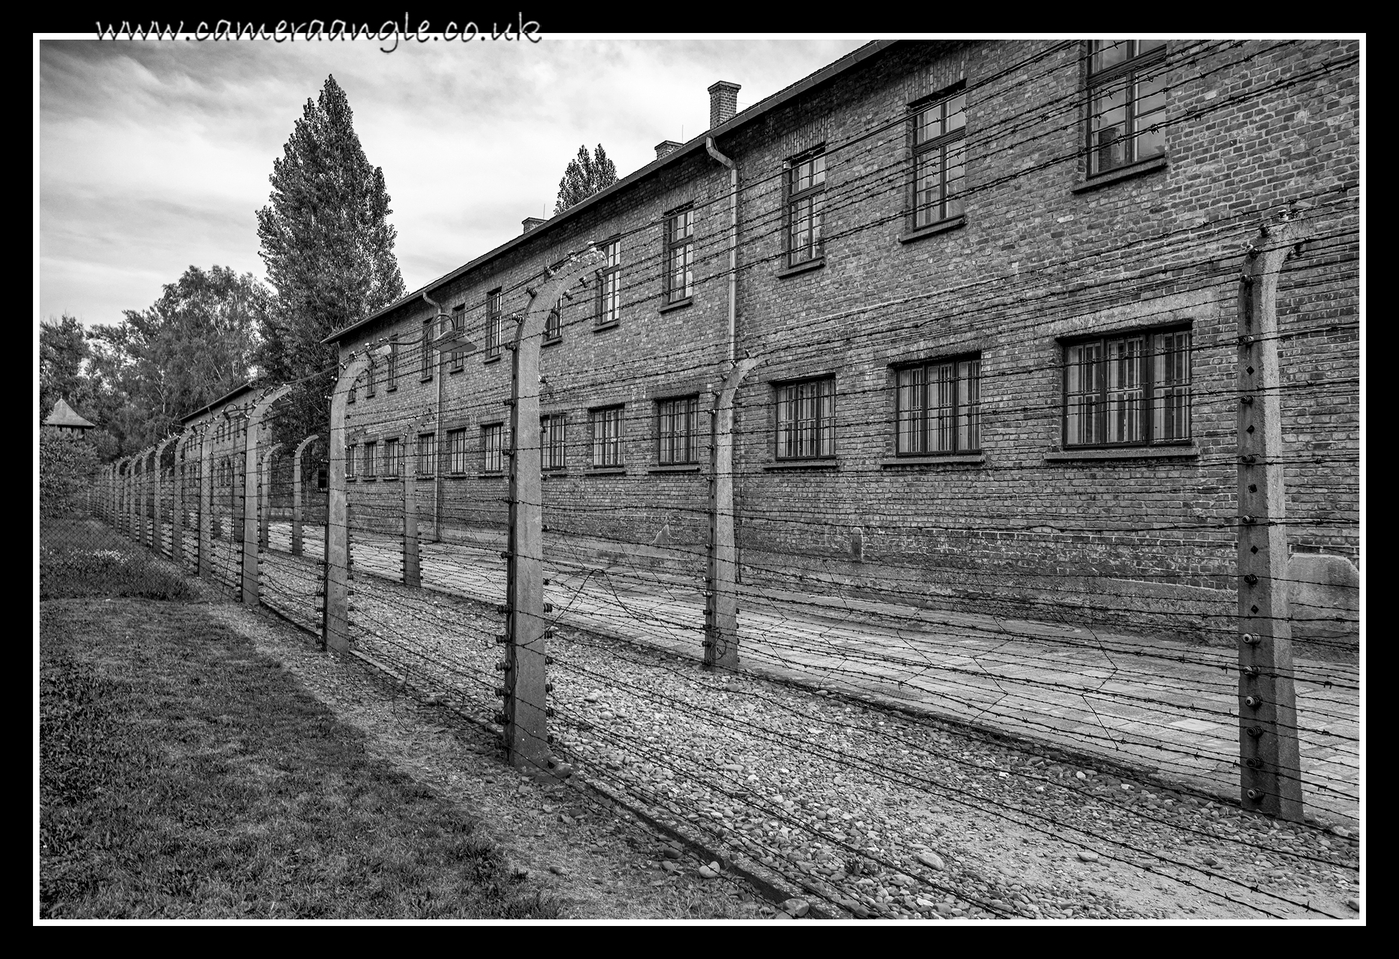 Auschwitz Barbed Wire Fence
Keywords: Auschwitz Barbed Wire Fence 2019 Krakow